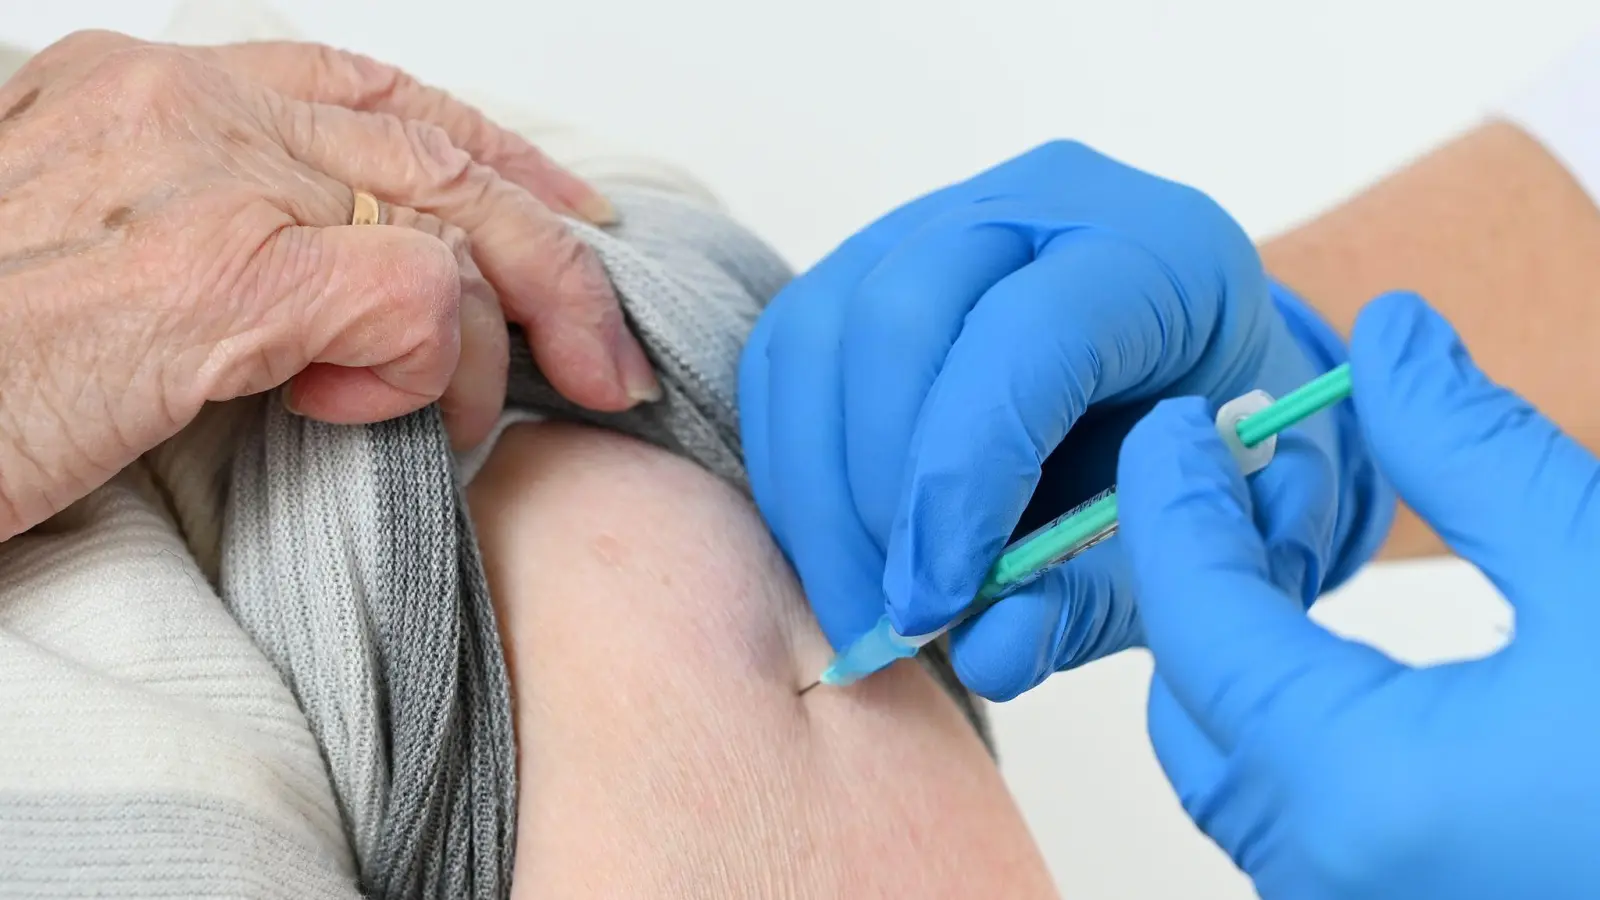 Ärzte empfehlen für Risikogruppen eine Impfung gegen Covid-19. (Foto: Uwe Zucchi/dpa)